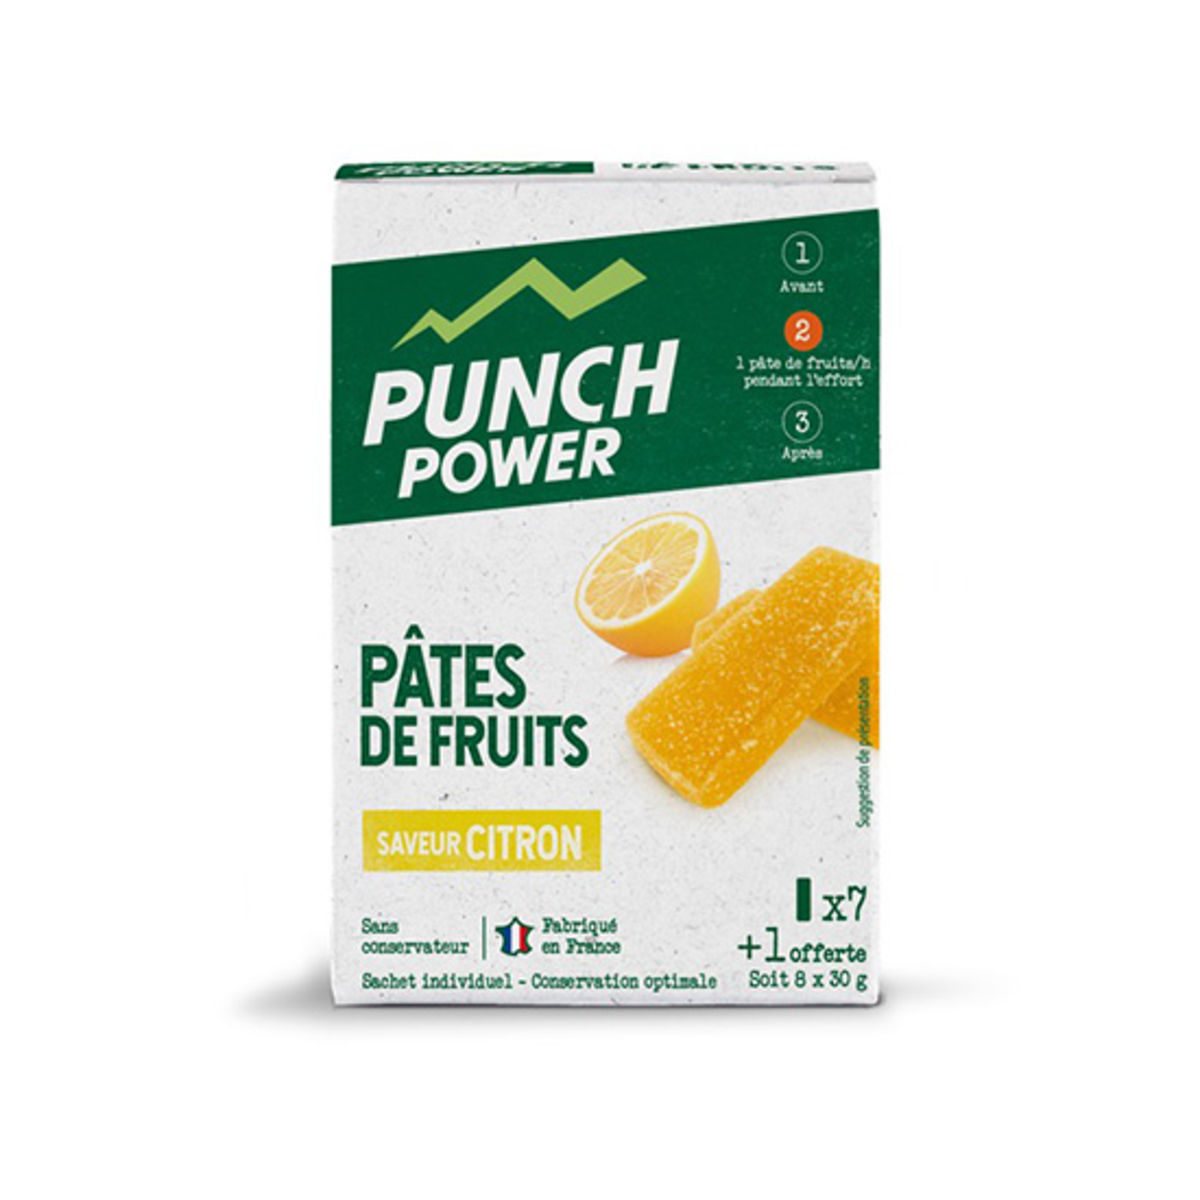 Pâte de fruits Punch Power x 8 - Citron